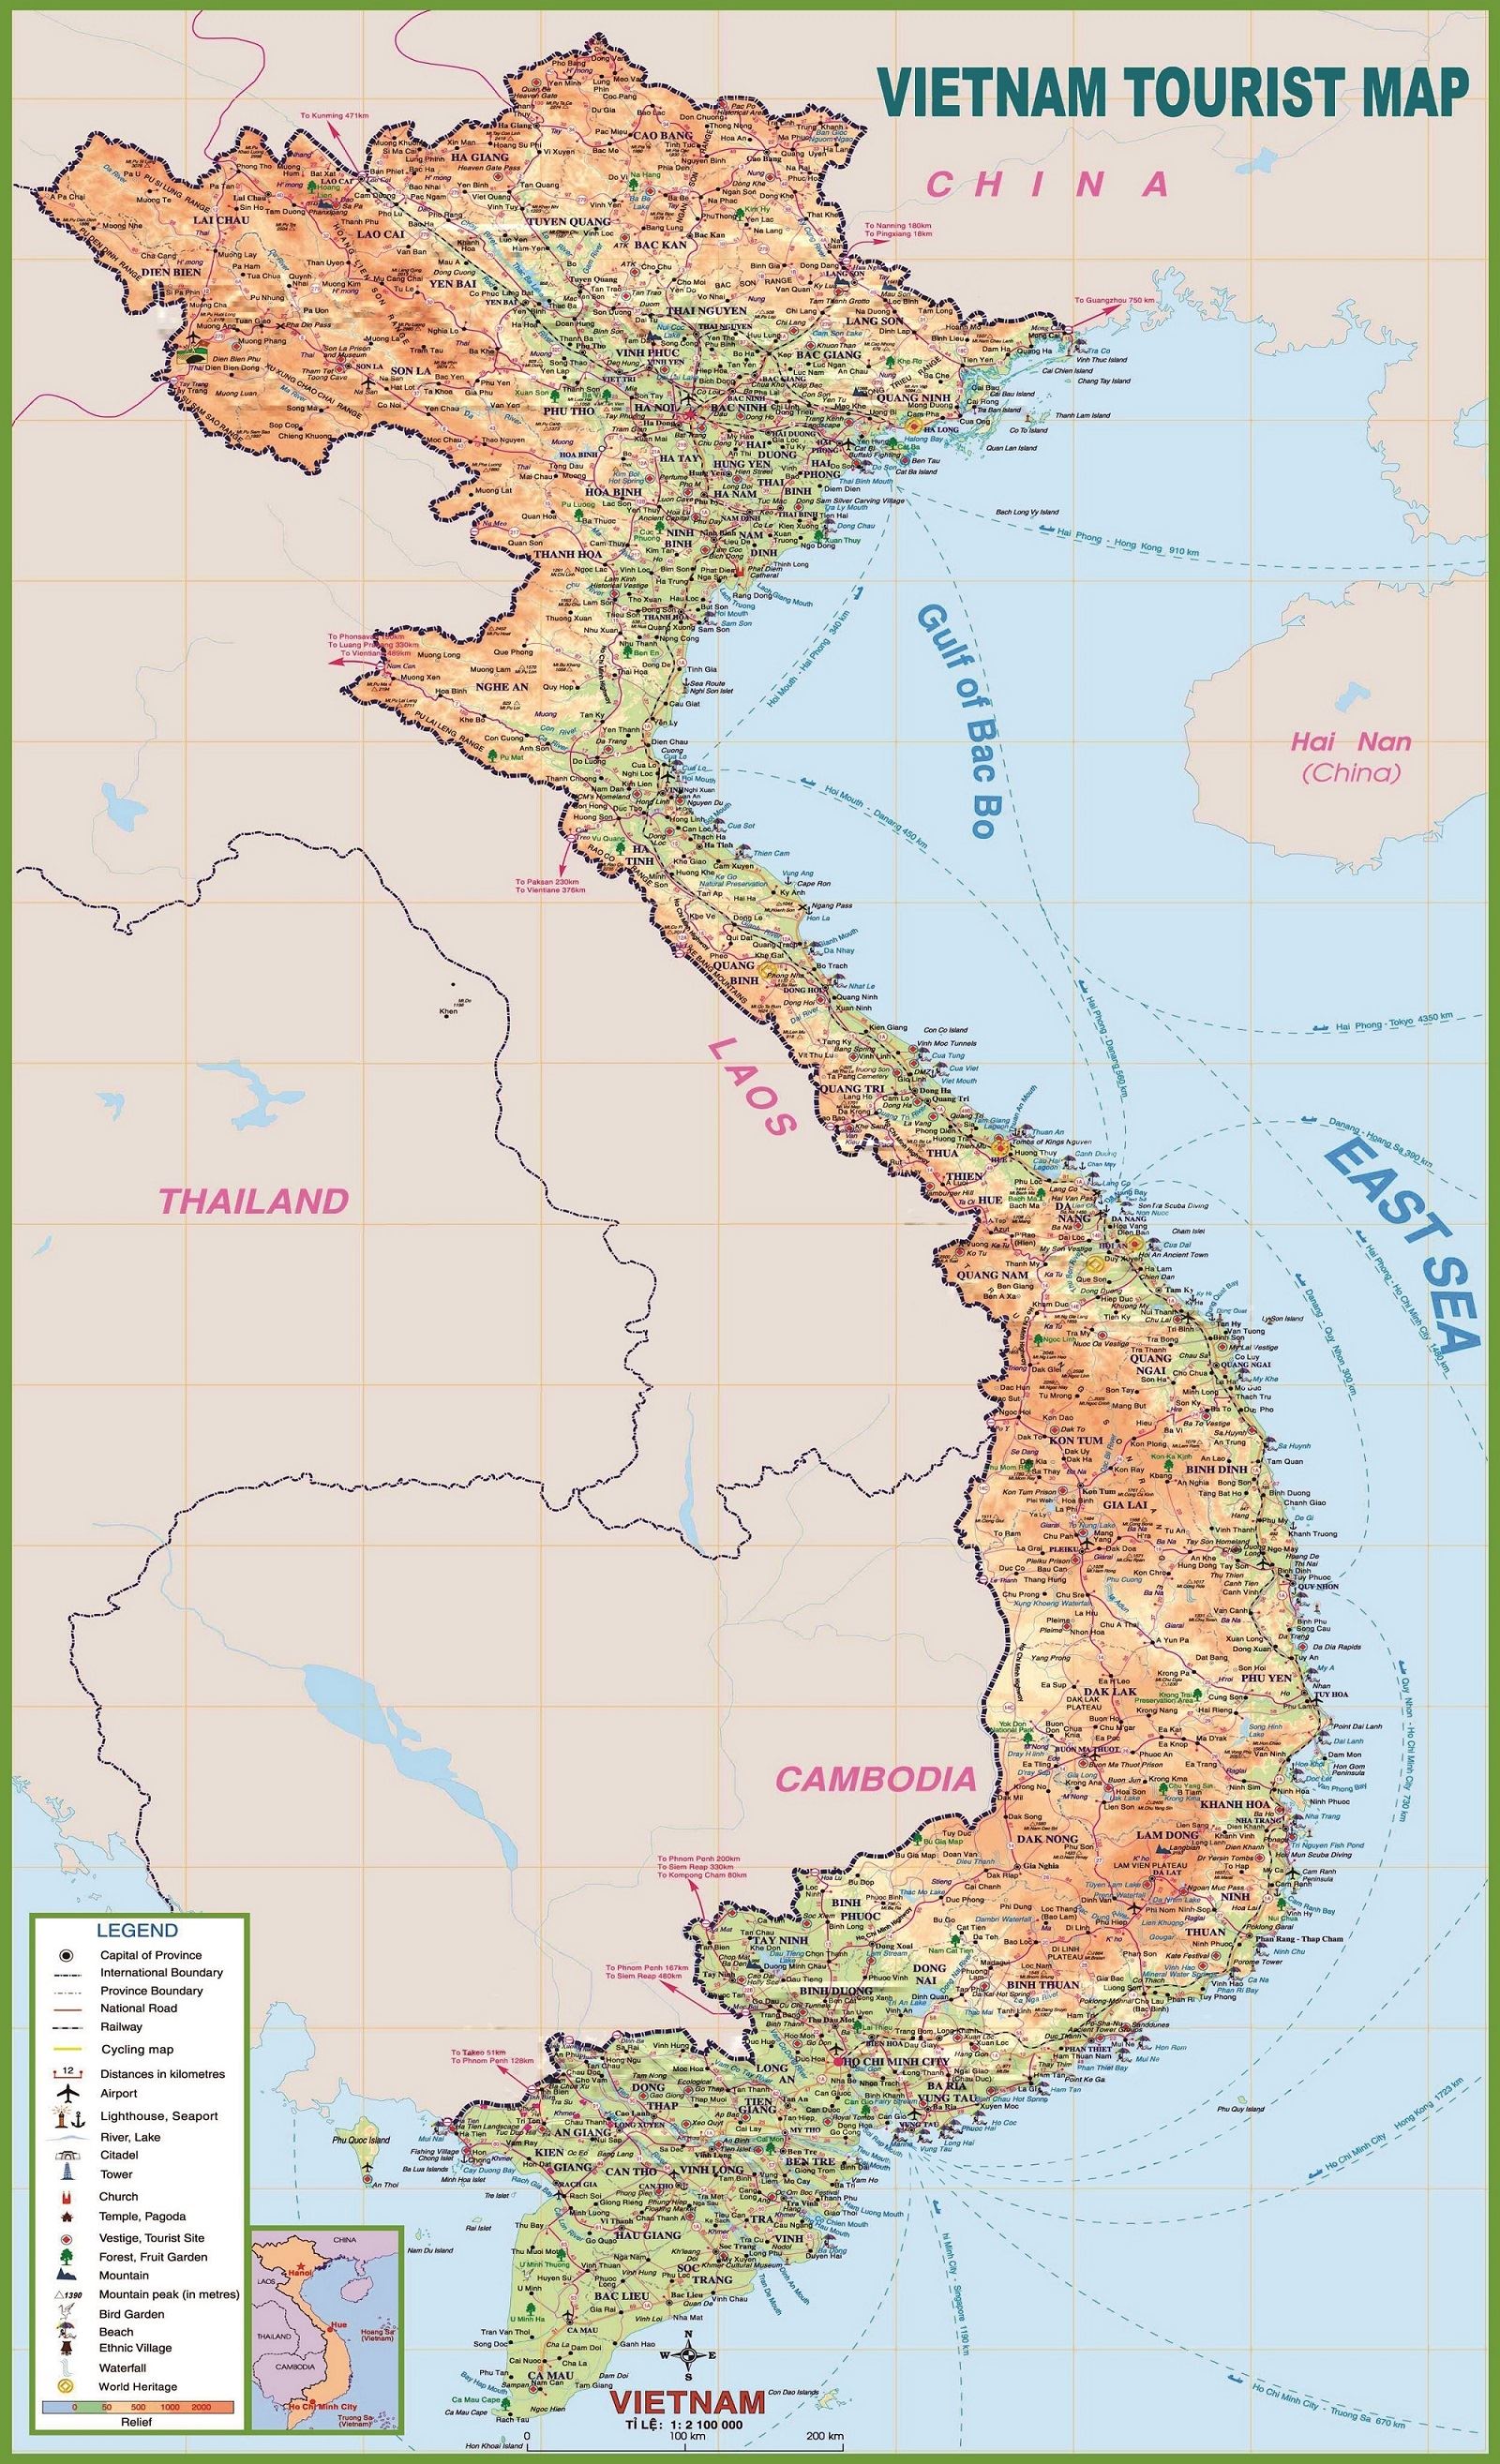 Bản đồ du lịch Việt Nam